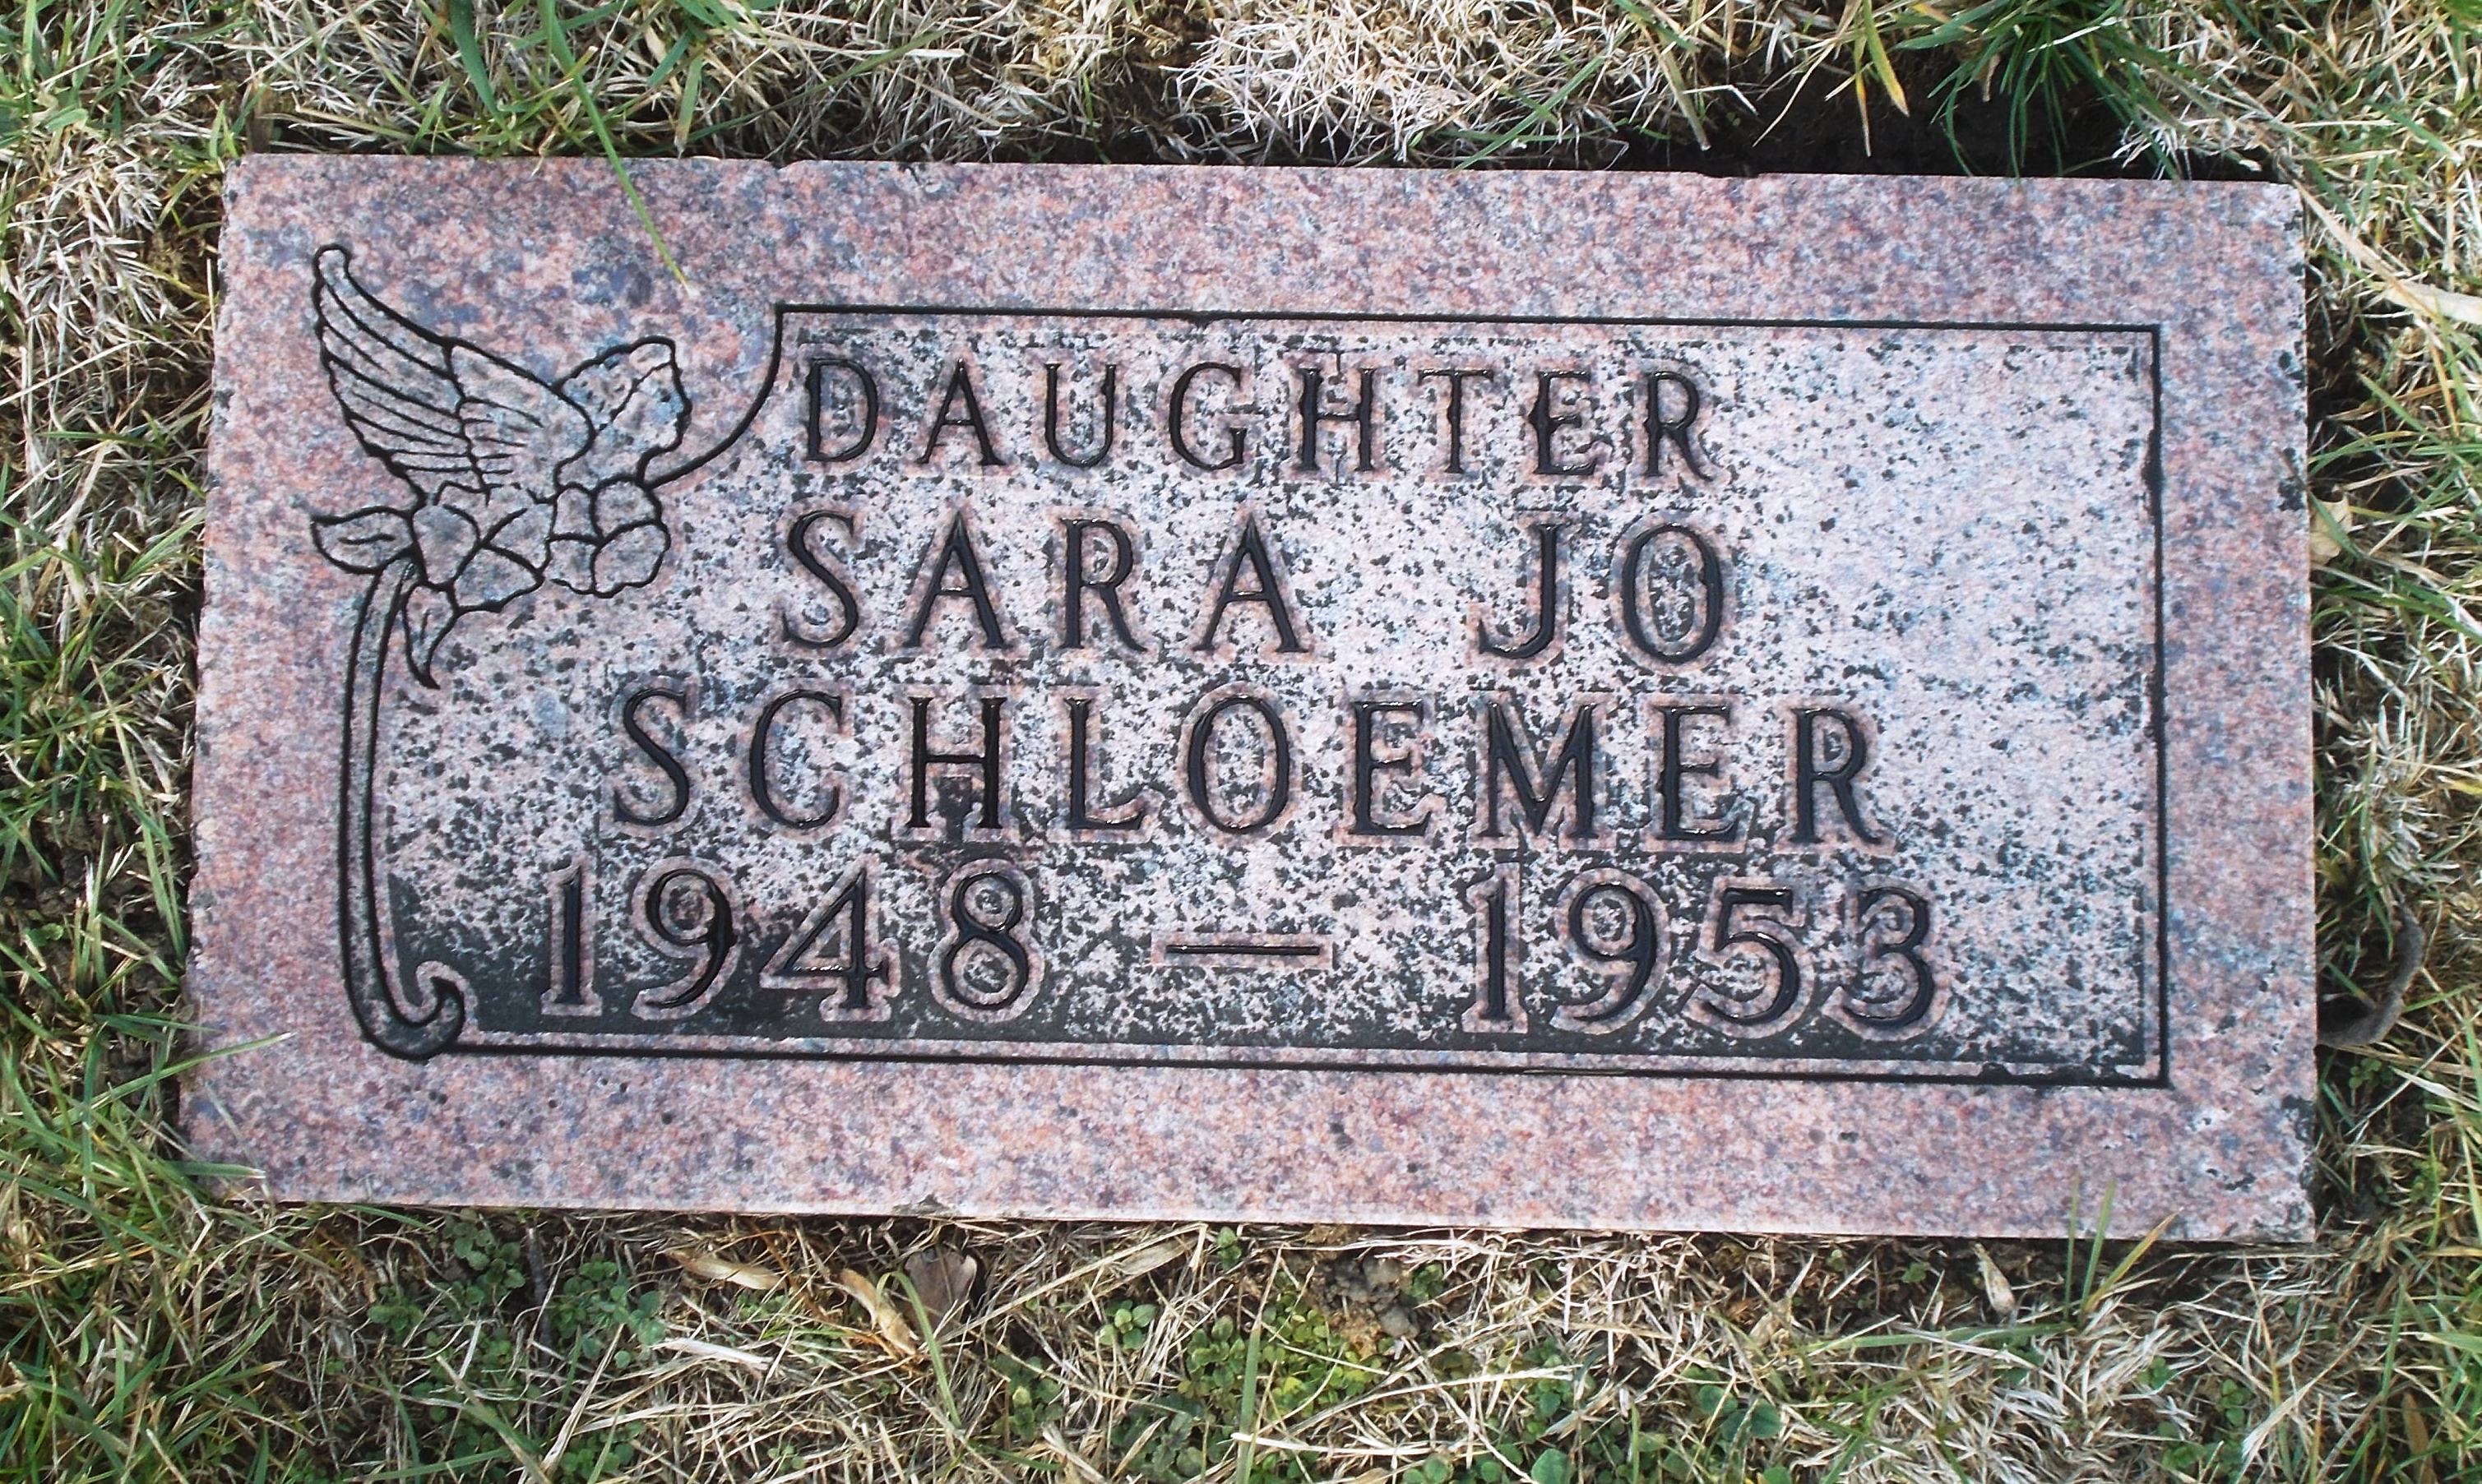 Sara Jo Schloemer